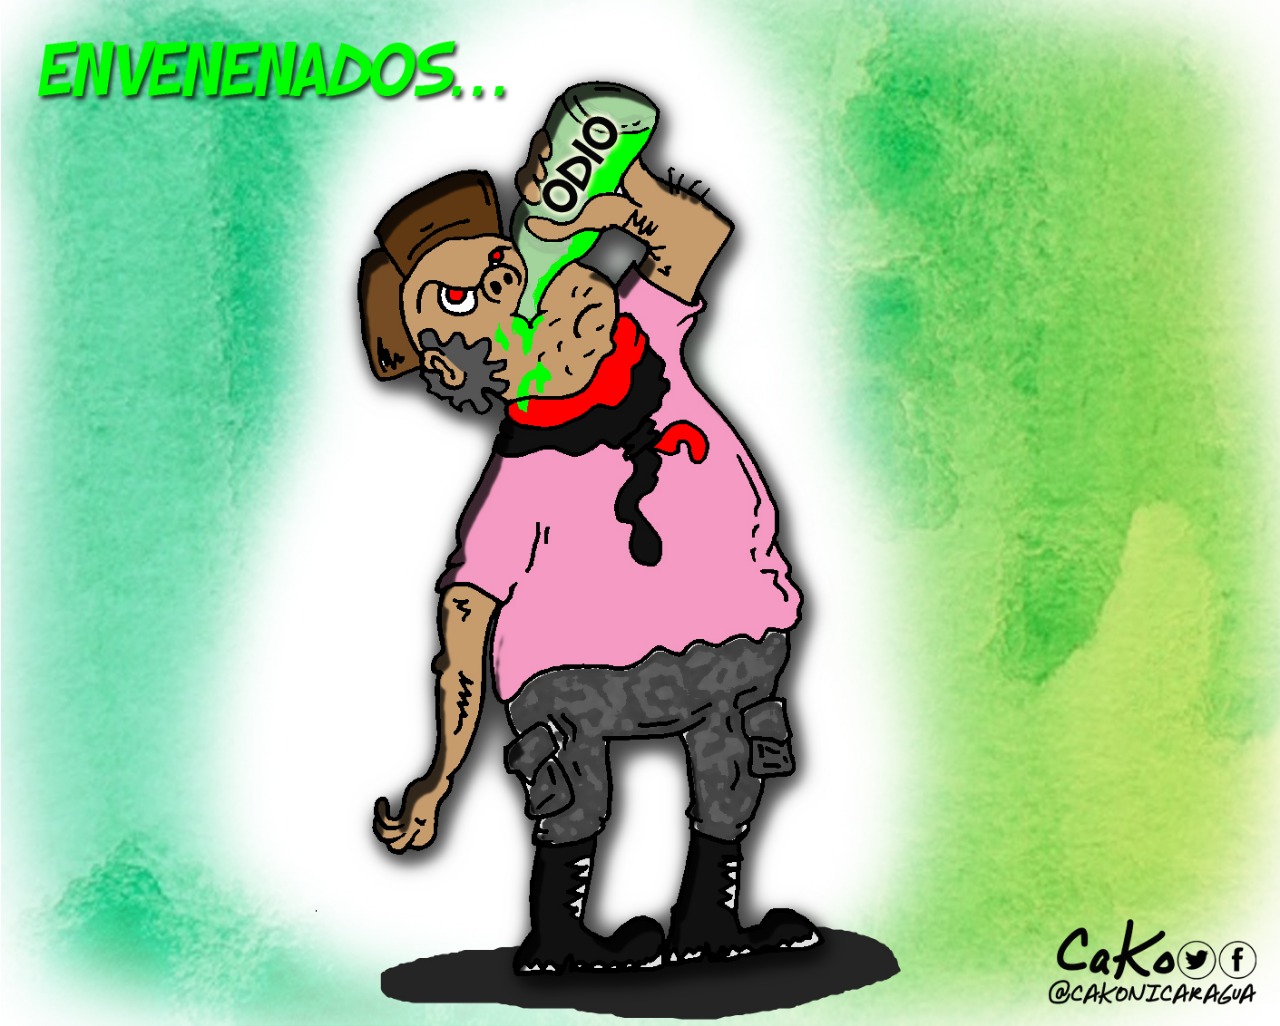 La Caricatura: "Los Envenenados"